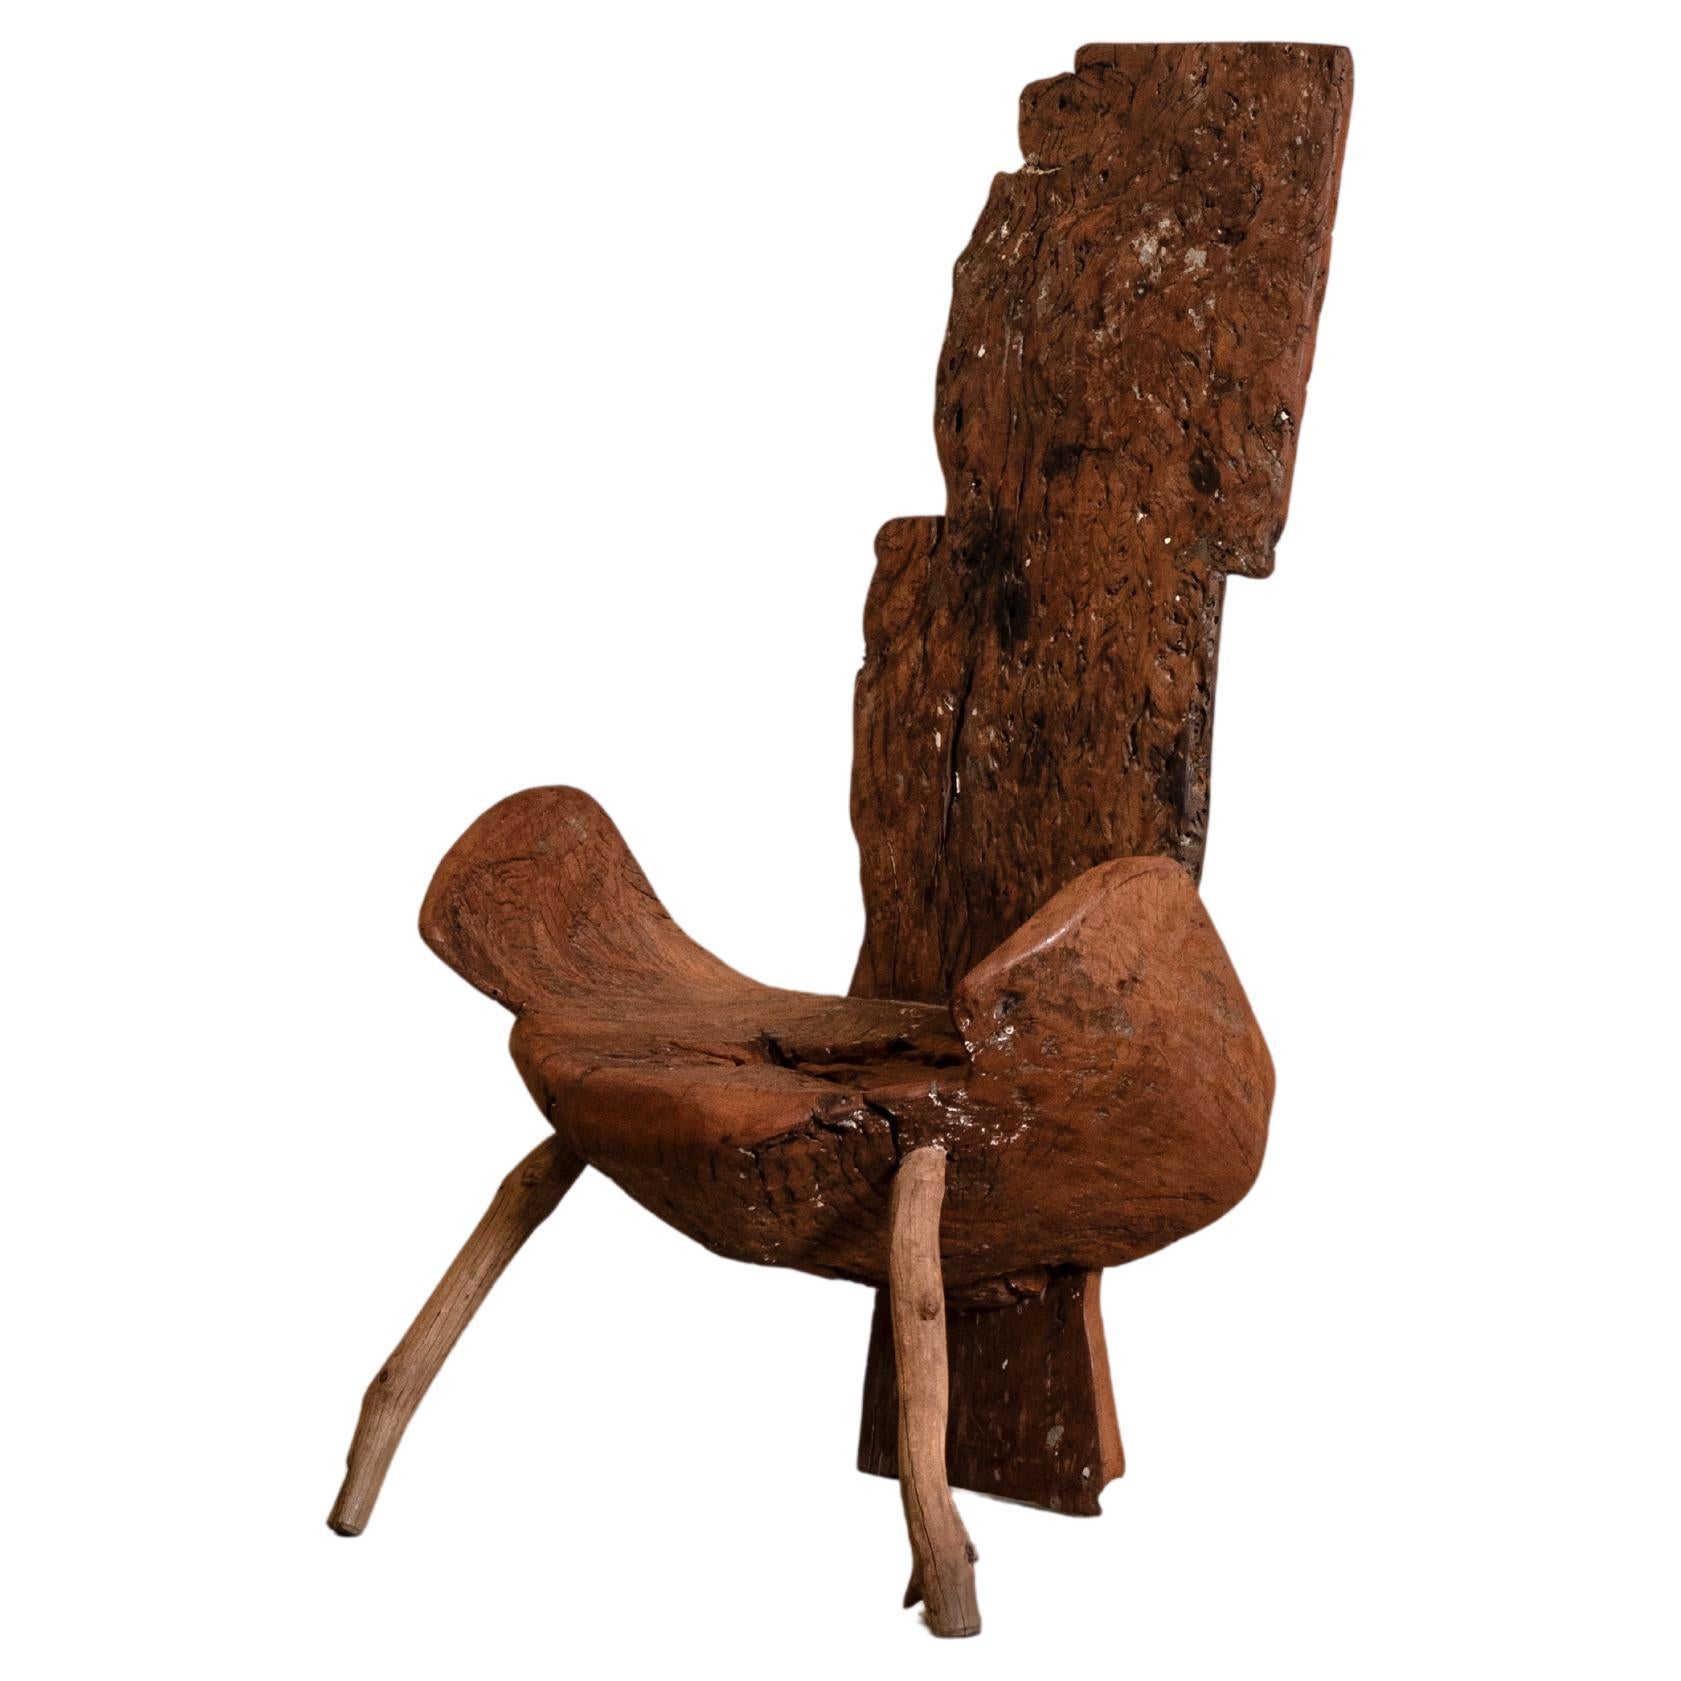 Chaise longue en bois massif récupéré, design contemporain brésilien.